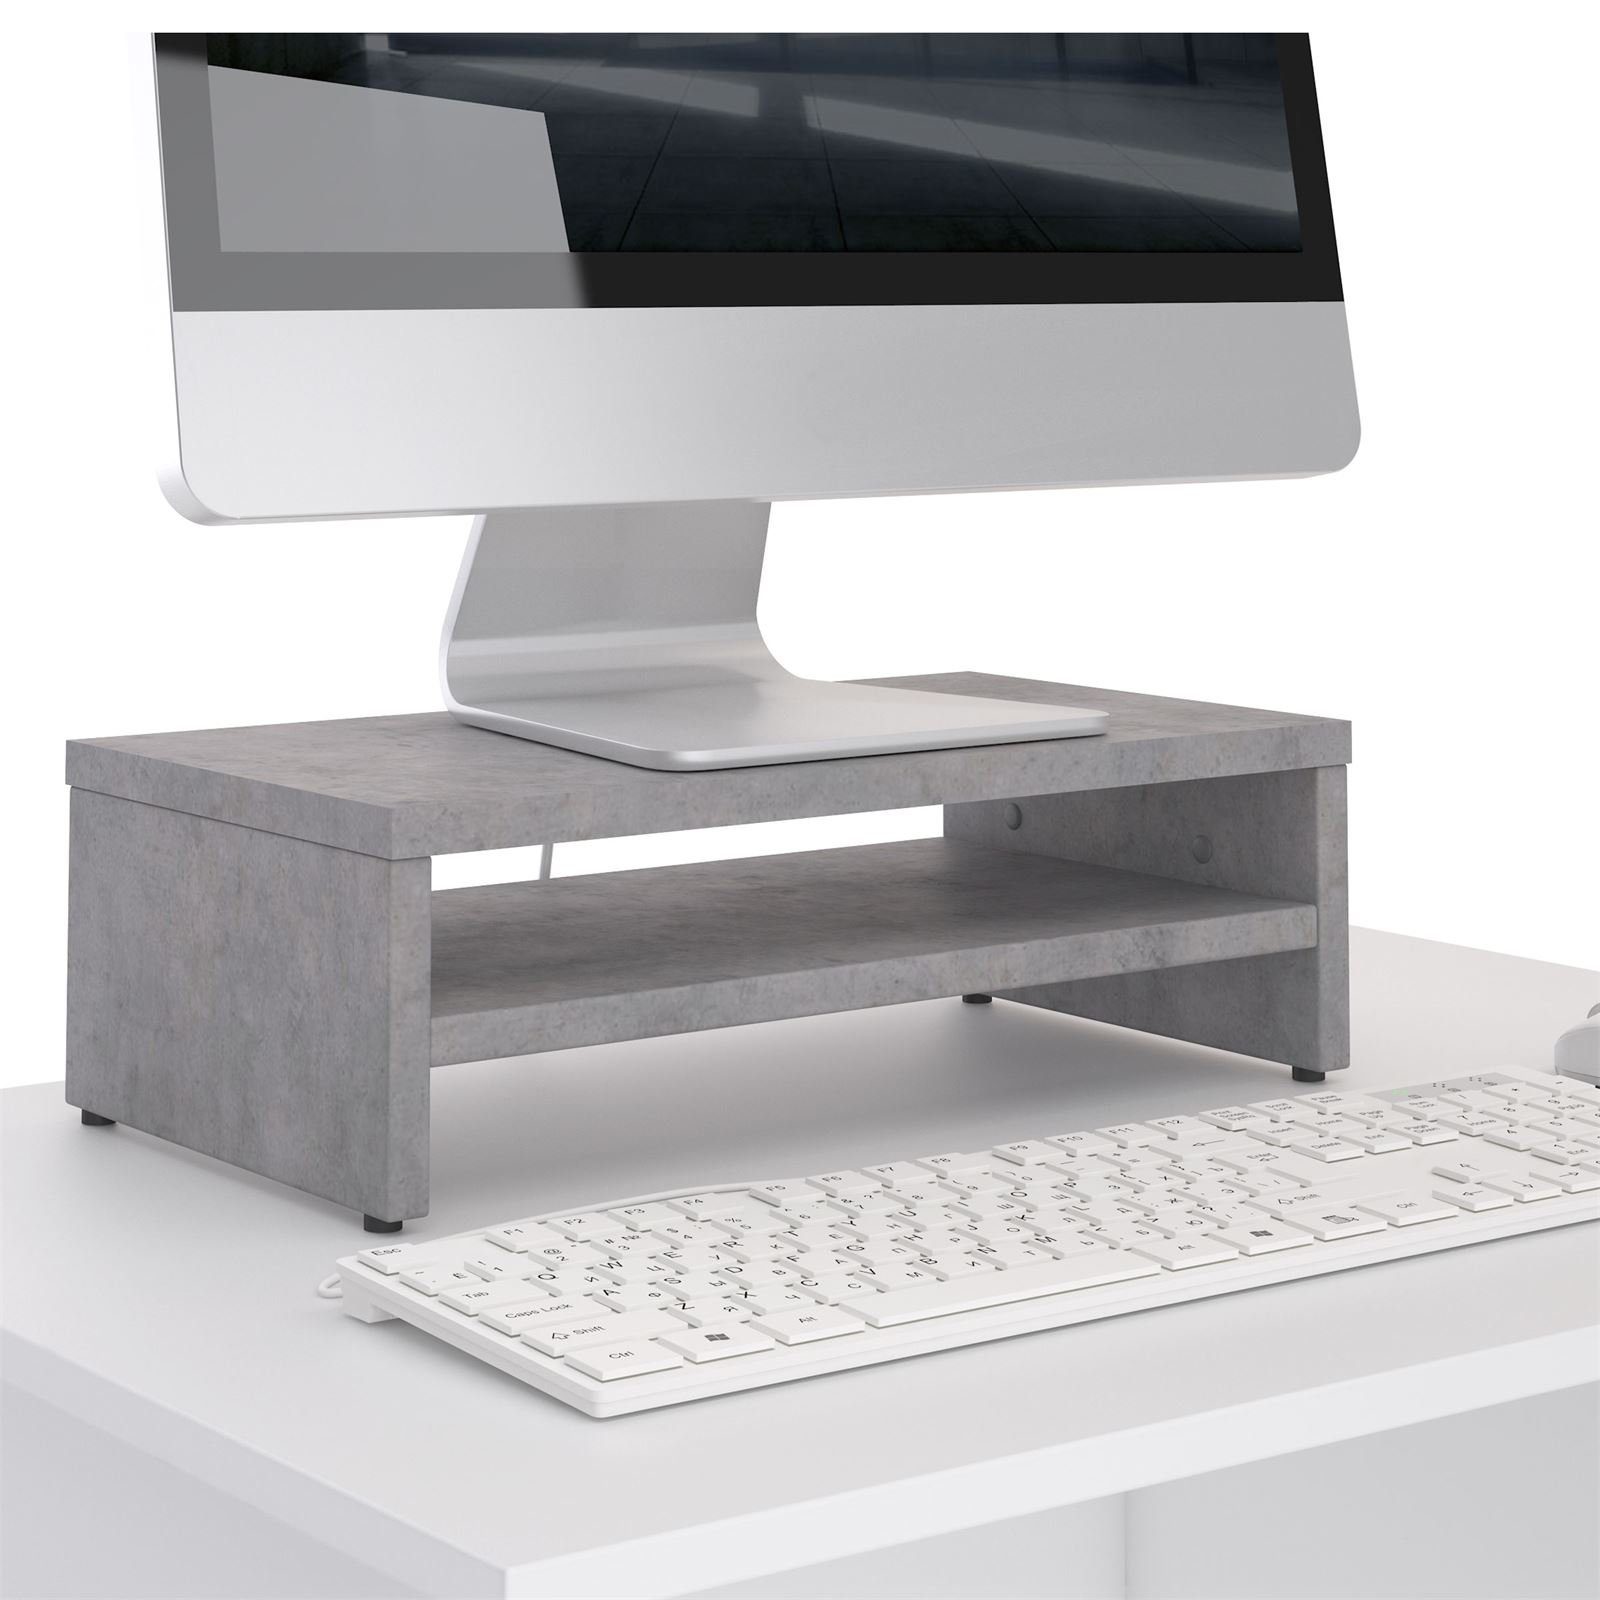 CARO-Möbel Schreibtischaufsatz SUBIDA, Bildschirmaufsatz Monitorständer  Monitorerhöhung inkl. Ablagefach Be